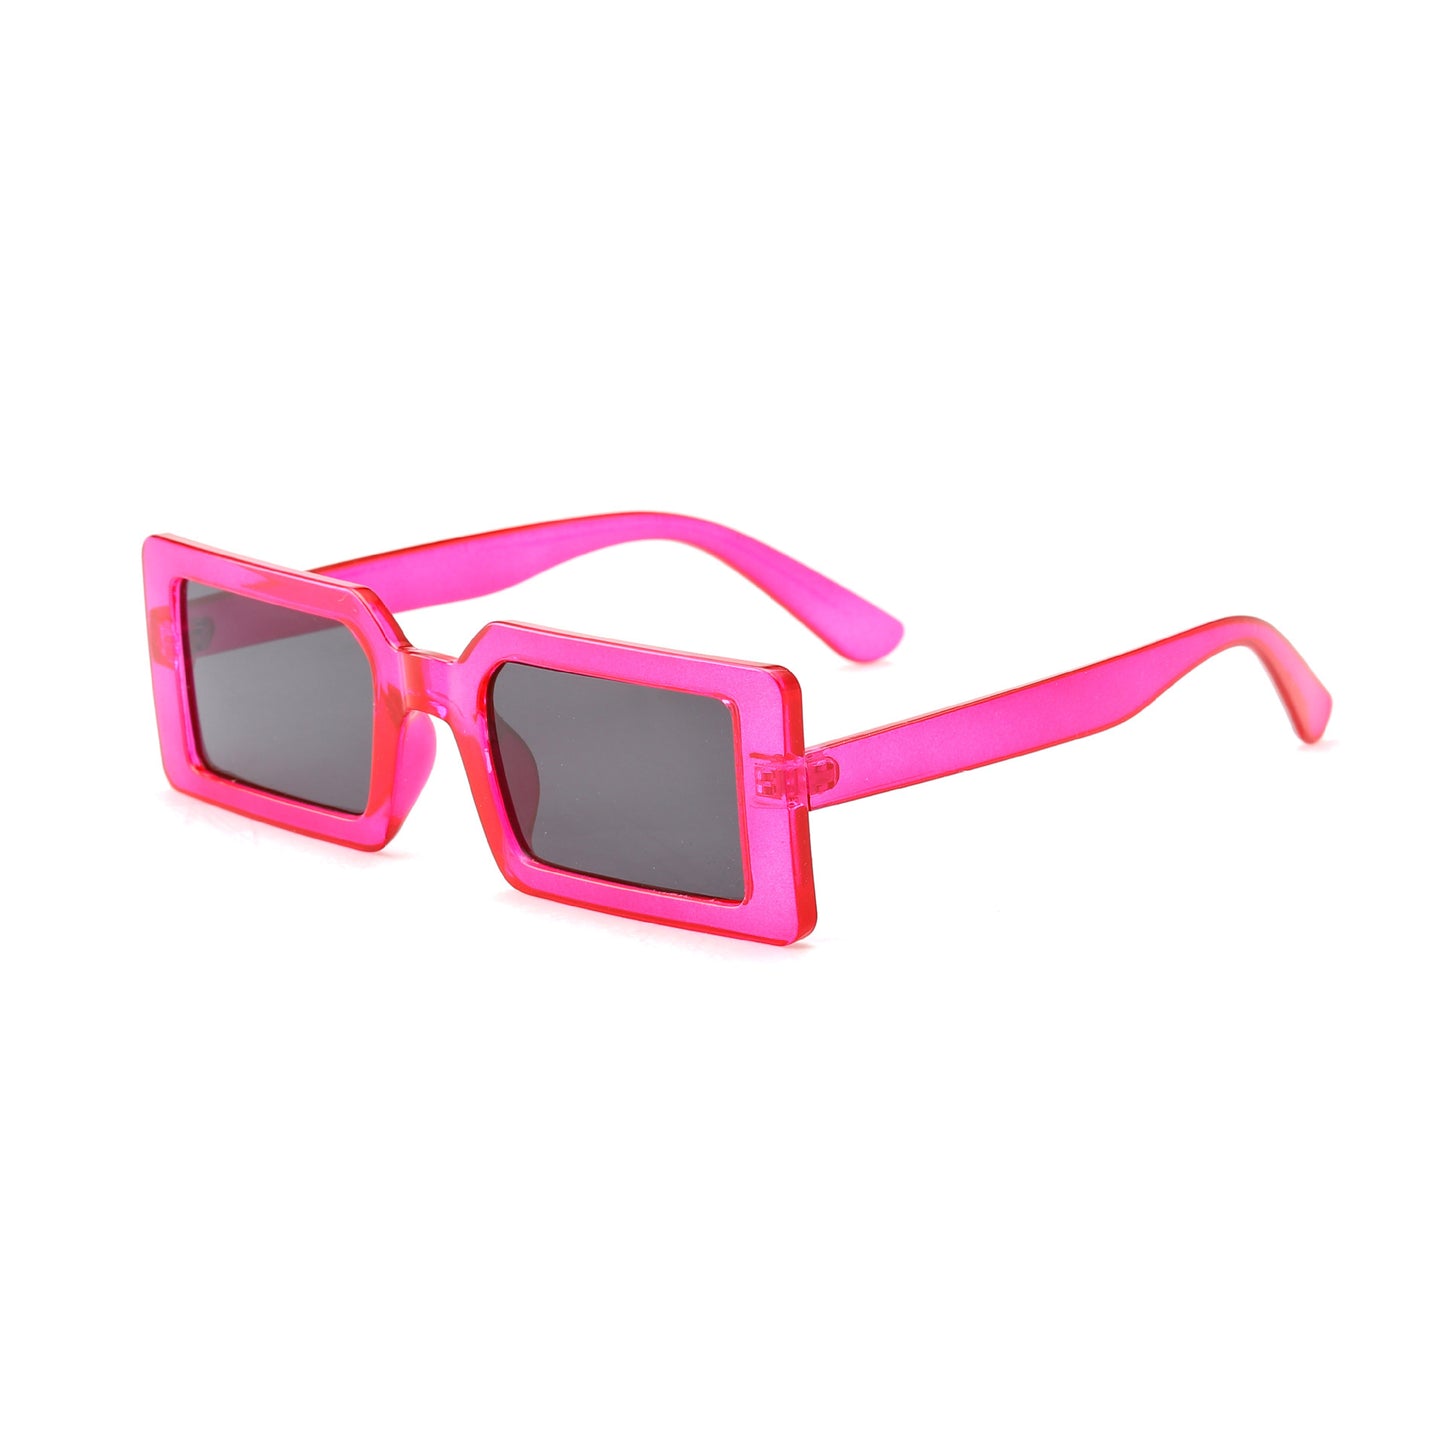 Small Frame Sunglasses, Square Sunglasses, Cross-border Trend, Square Sunglasses Women